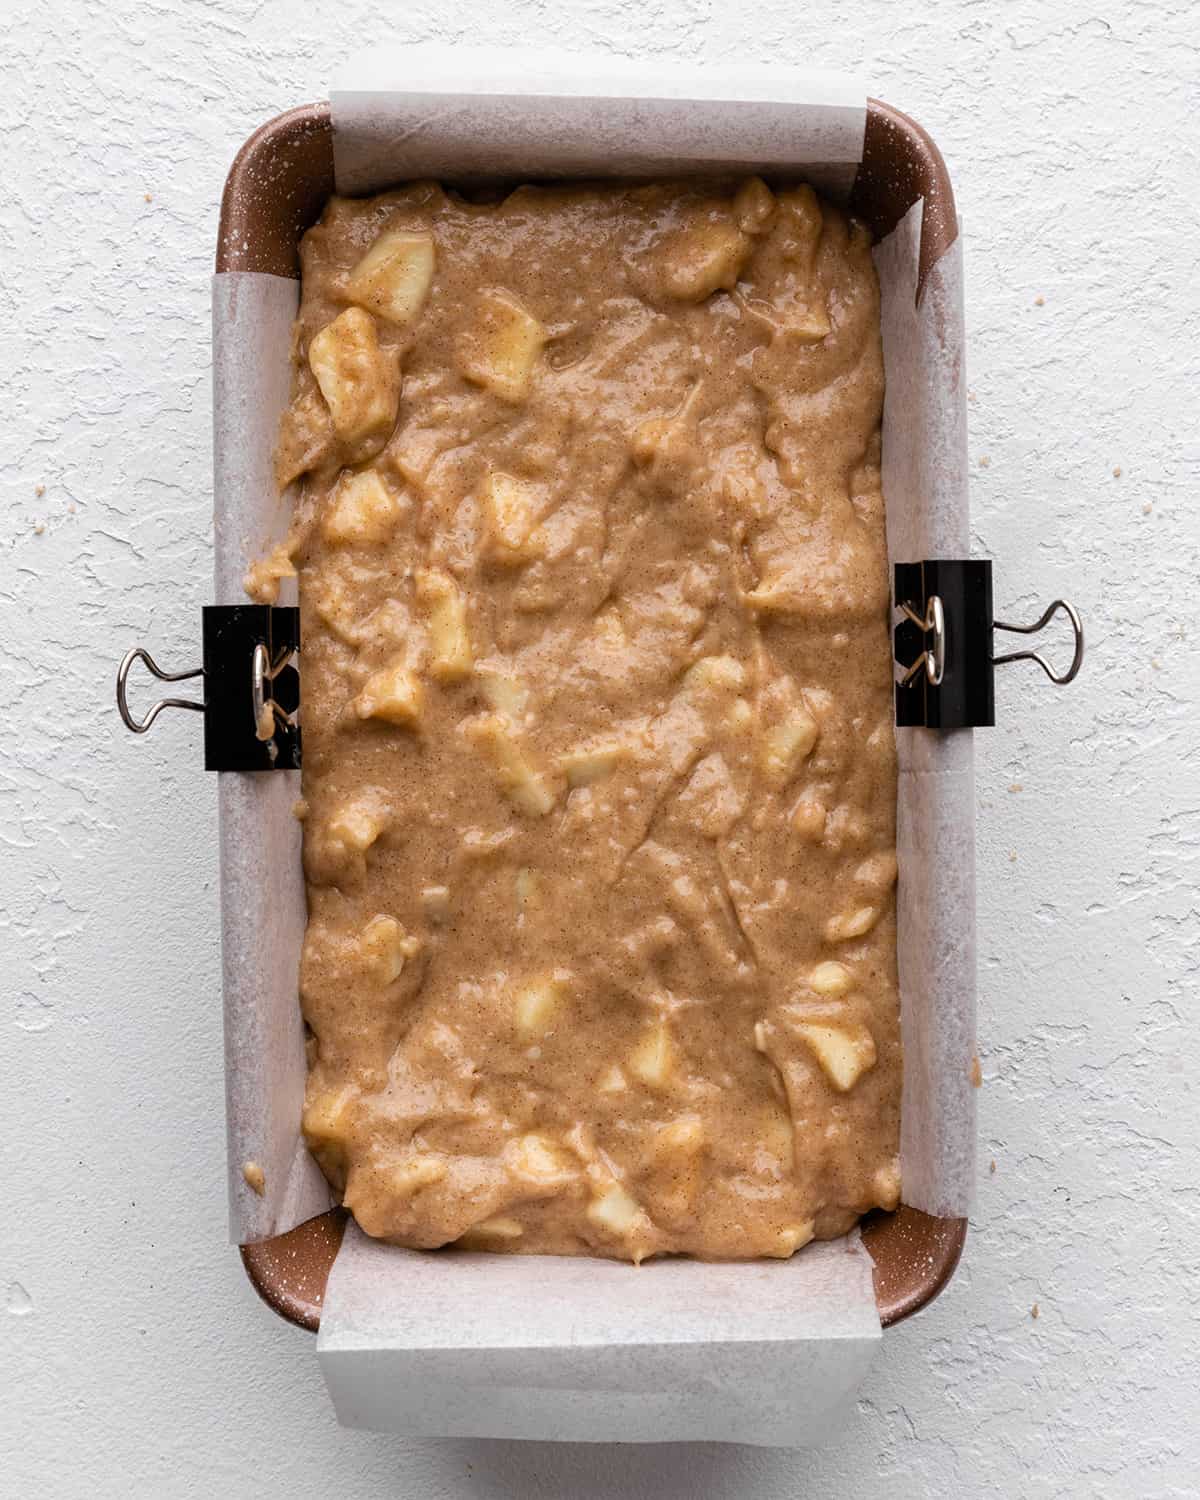 cinnamon apple bread in a baking pan before baking